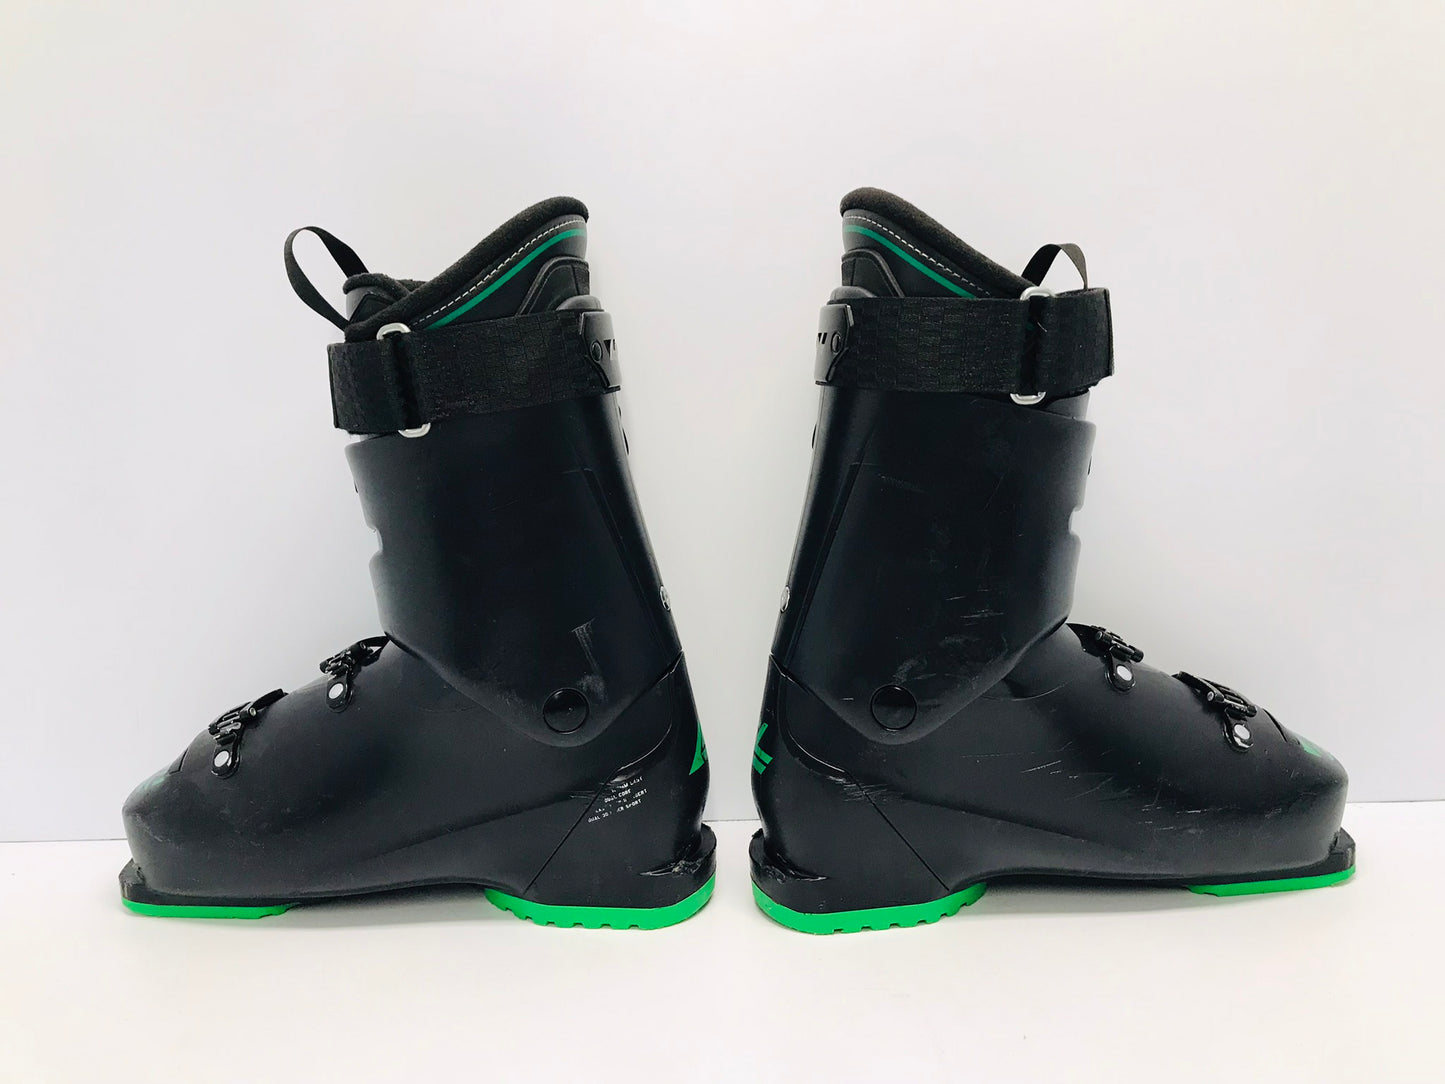 Ski Boots Mondo Size 27.5 Men's Size 9.5 Ladies Size 10.5 316 mm Lange Black Green Excellent